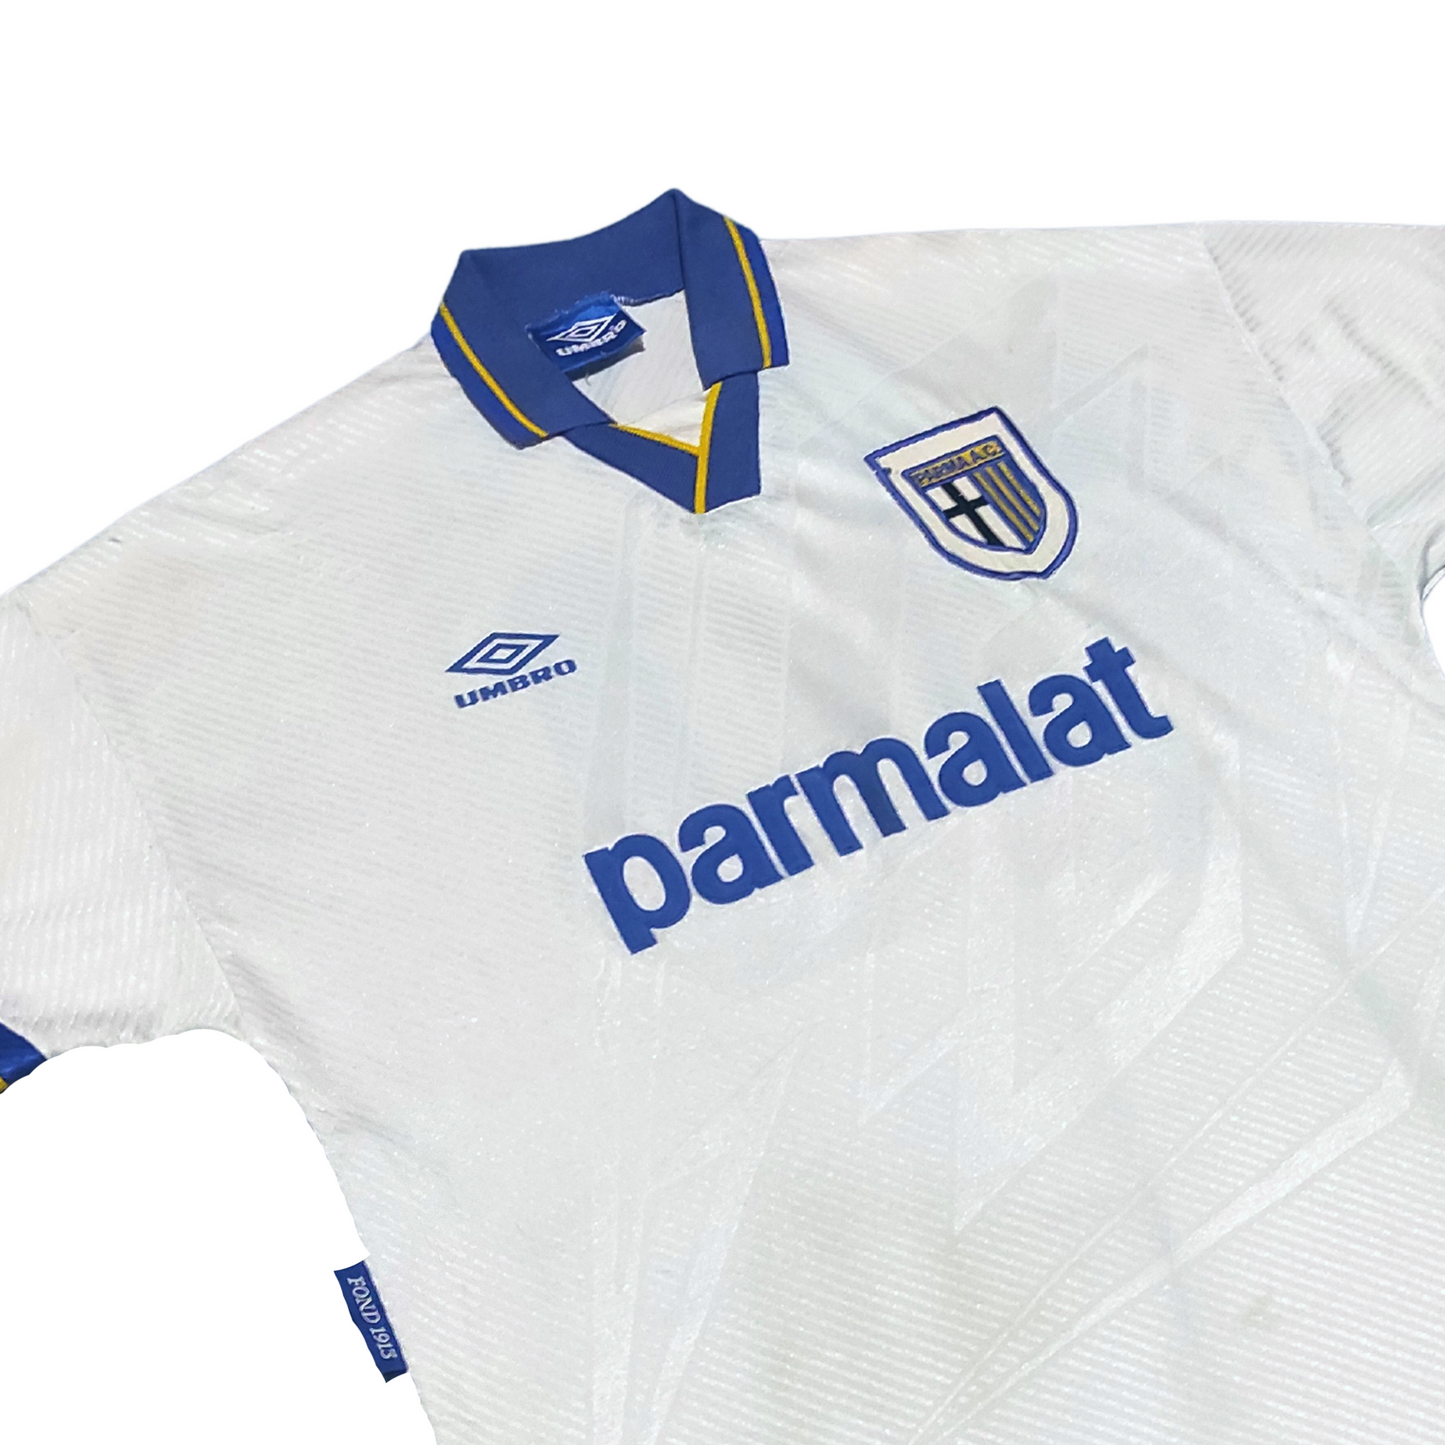 Parma Home Shirt 1993-1995 #10 Zola (L)